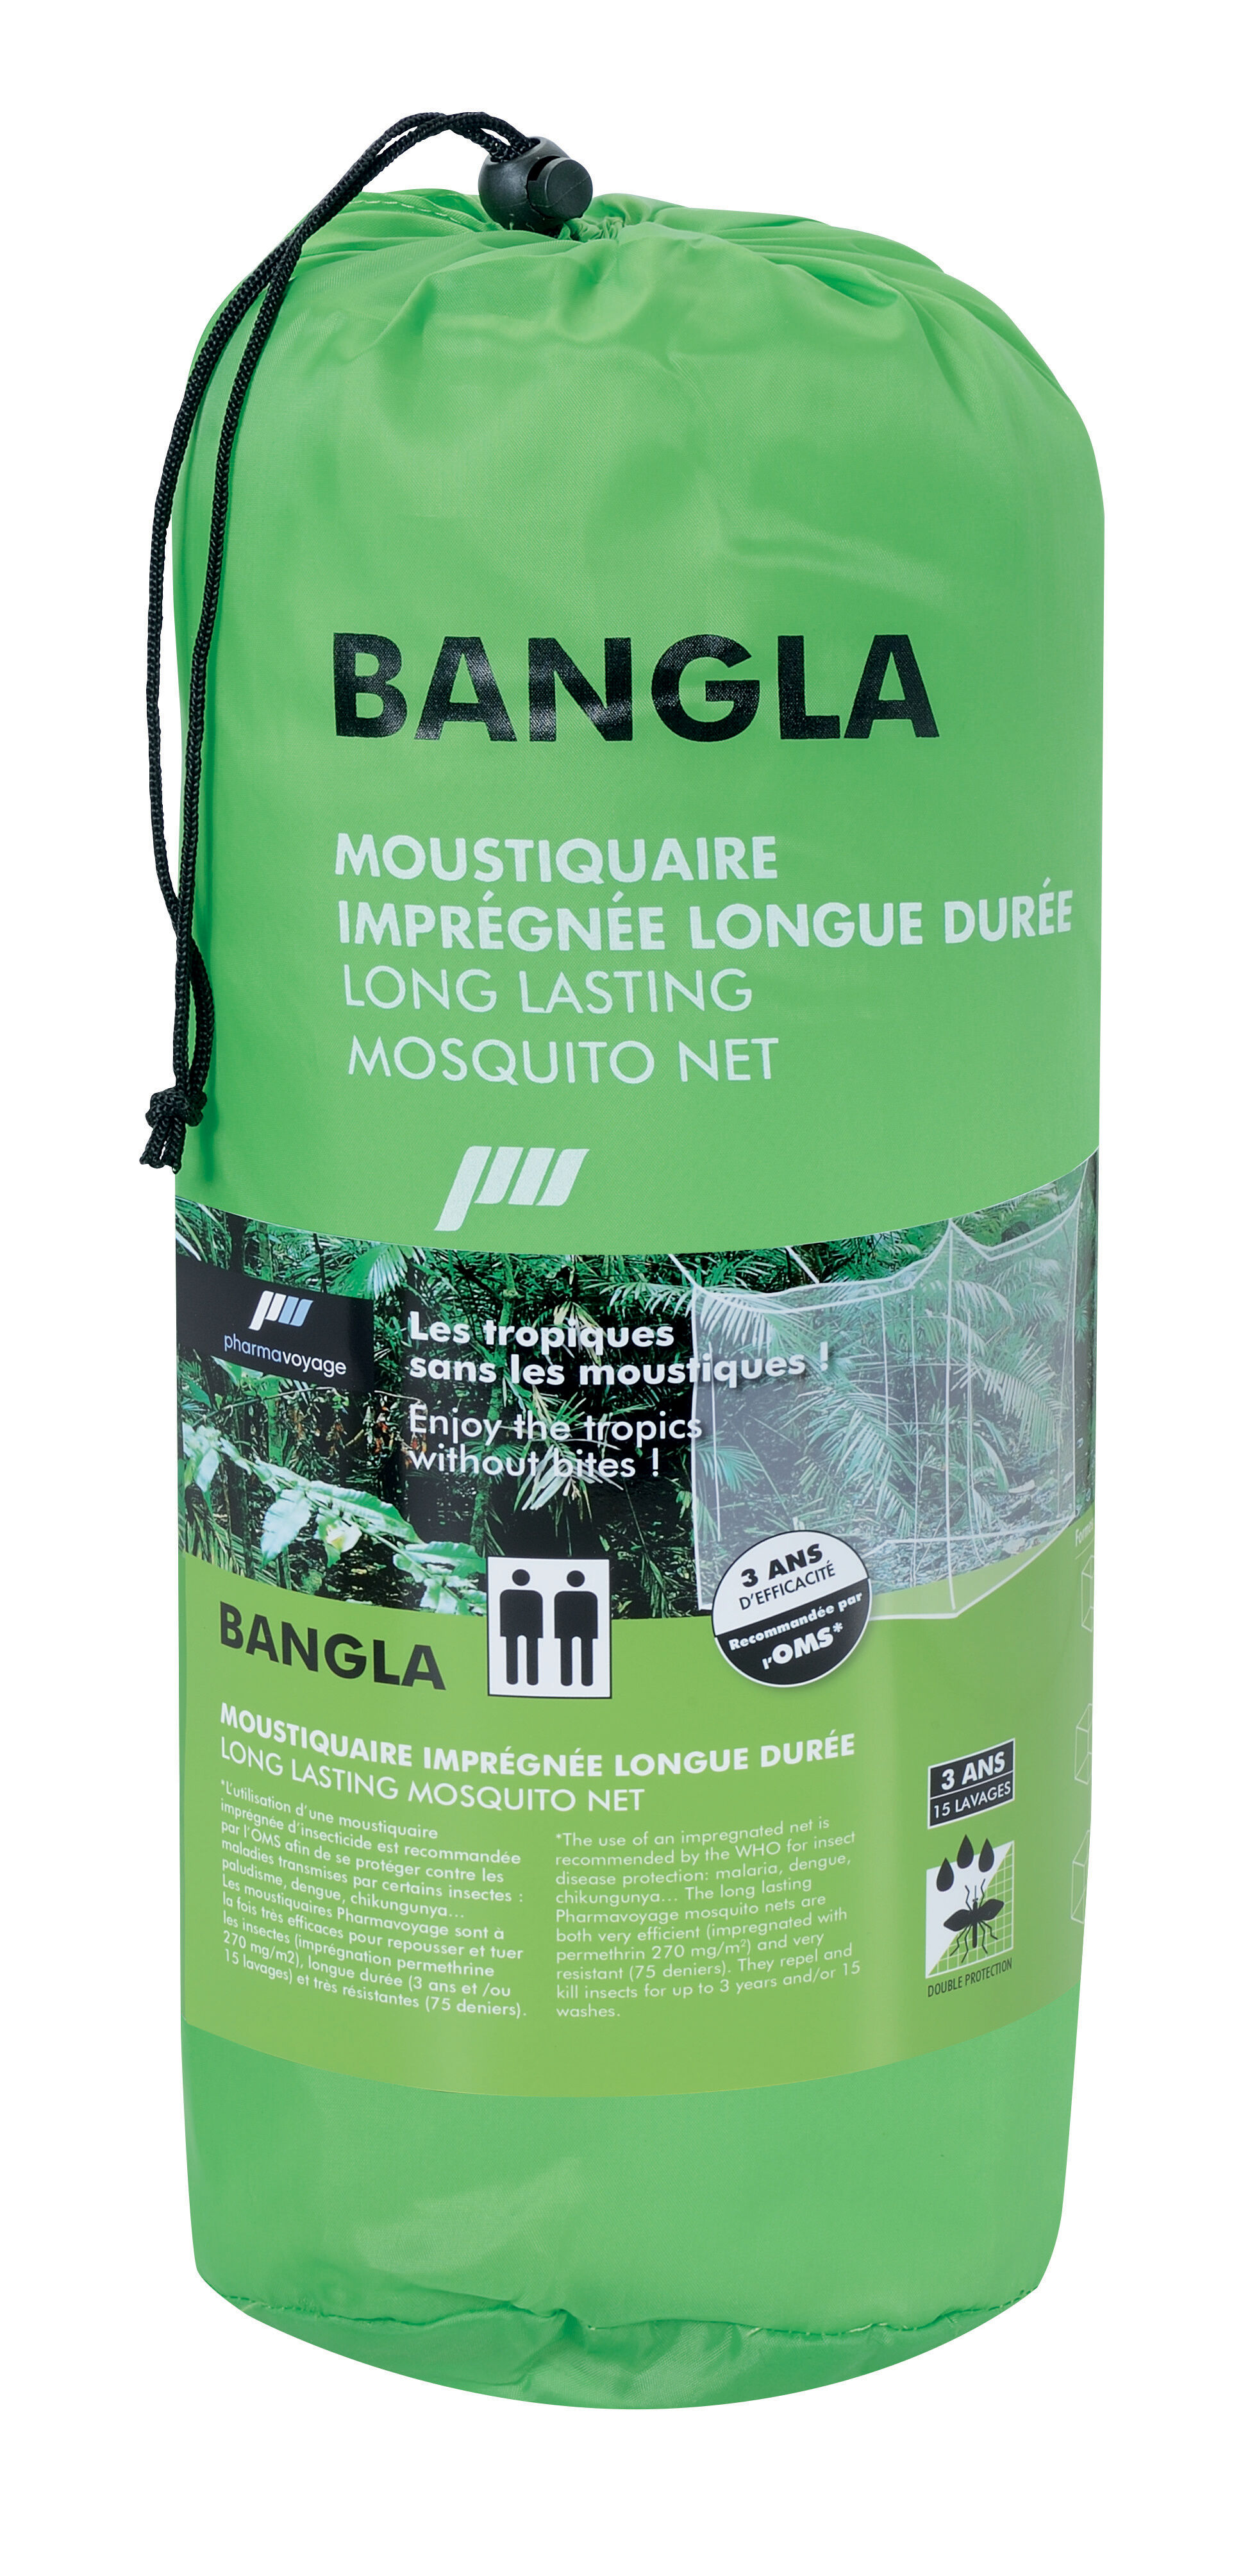 Pharmavoyage - Bangla - 2 people - Long Lasting Mosquito Net